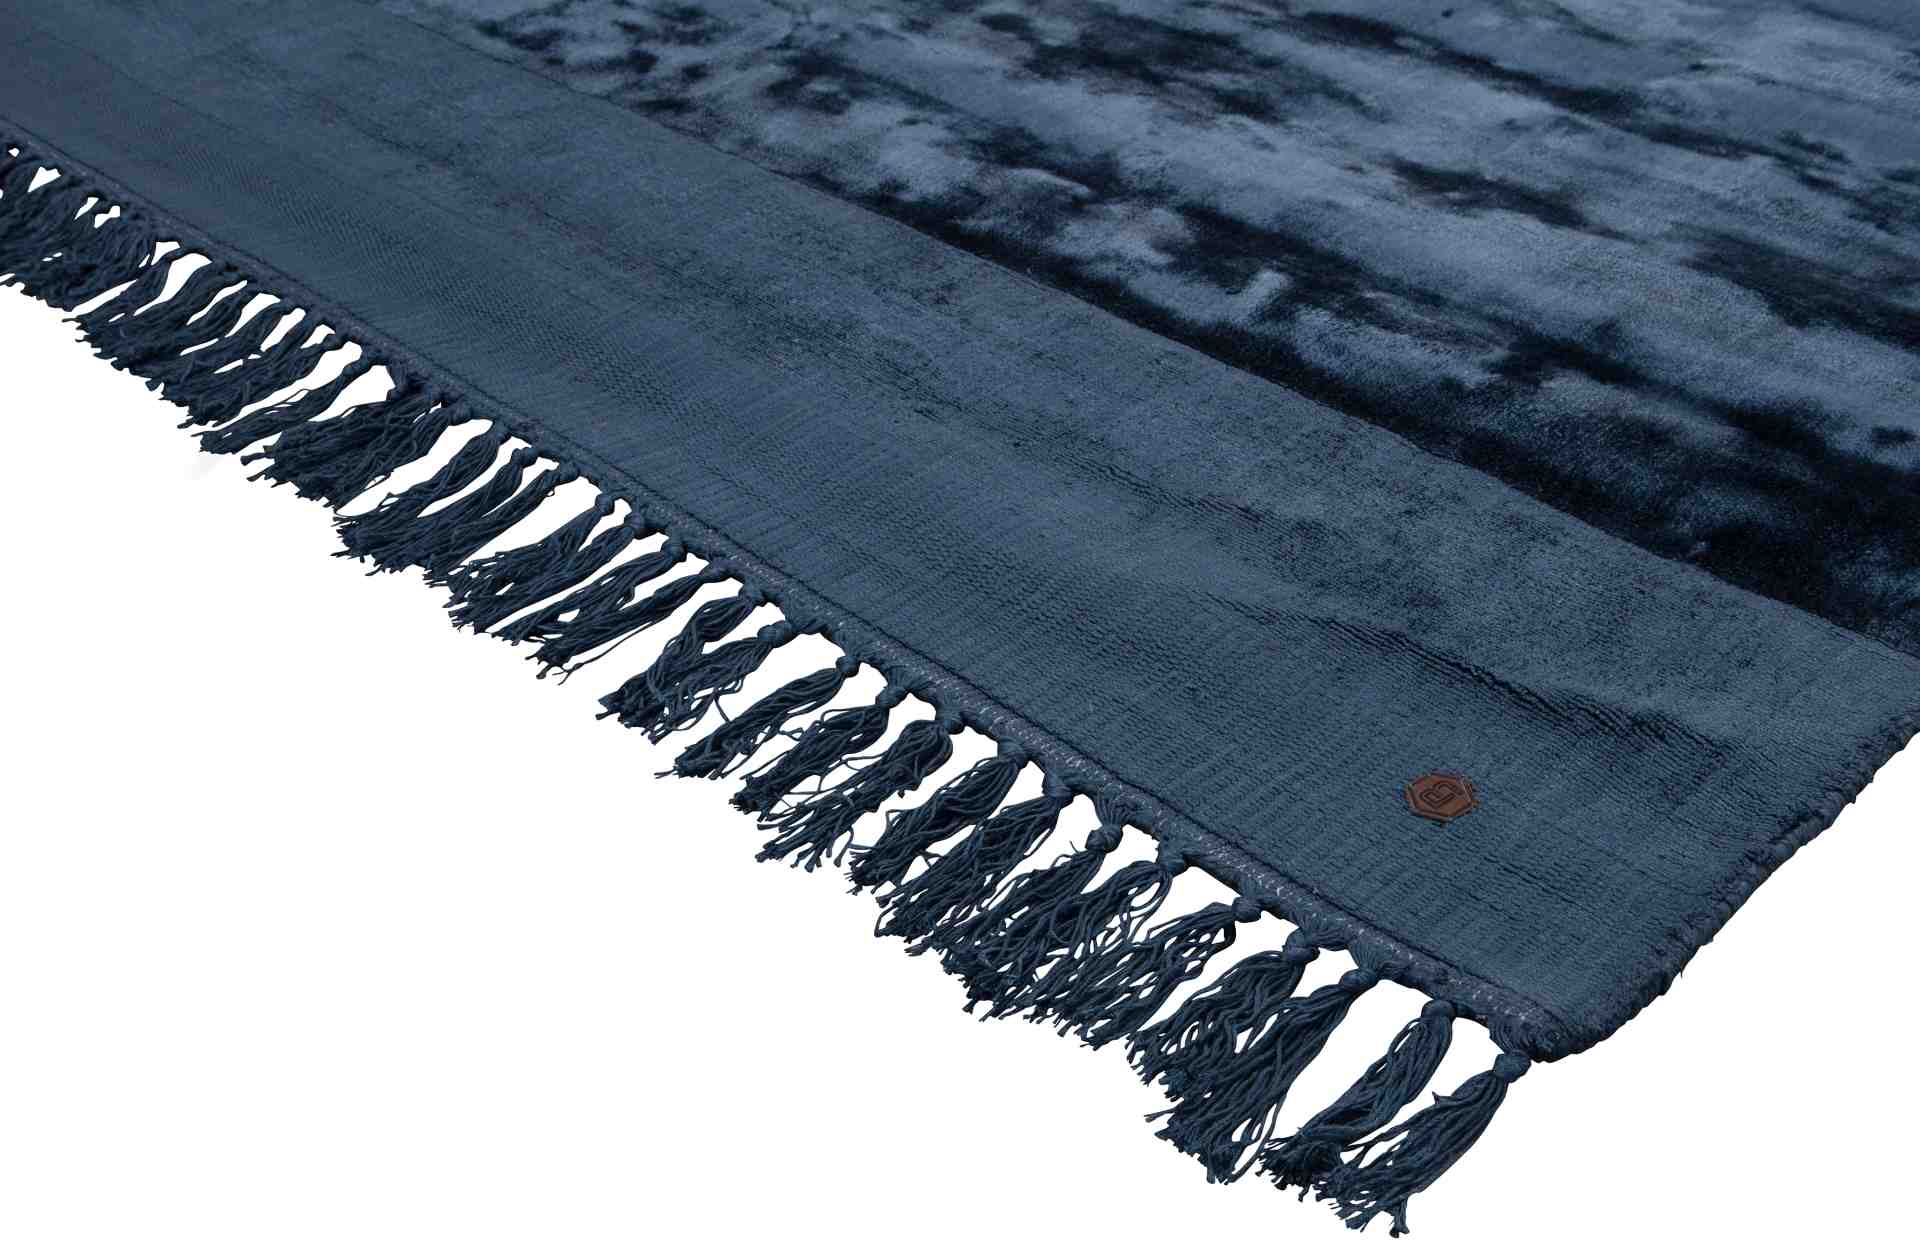 Der Teppich Sweep überzeugt mit seinem modernen Design. Gefertigt wurde er aus einem Kombinationsgewebe aus Viskose und Baumwolle, welche einen blauen Farbton besitzt. Der Teppich besitzt eine Größe von 200x300 cm.